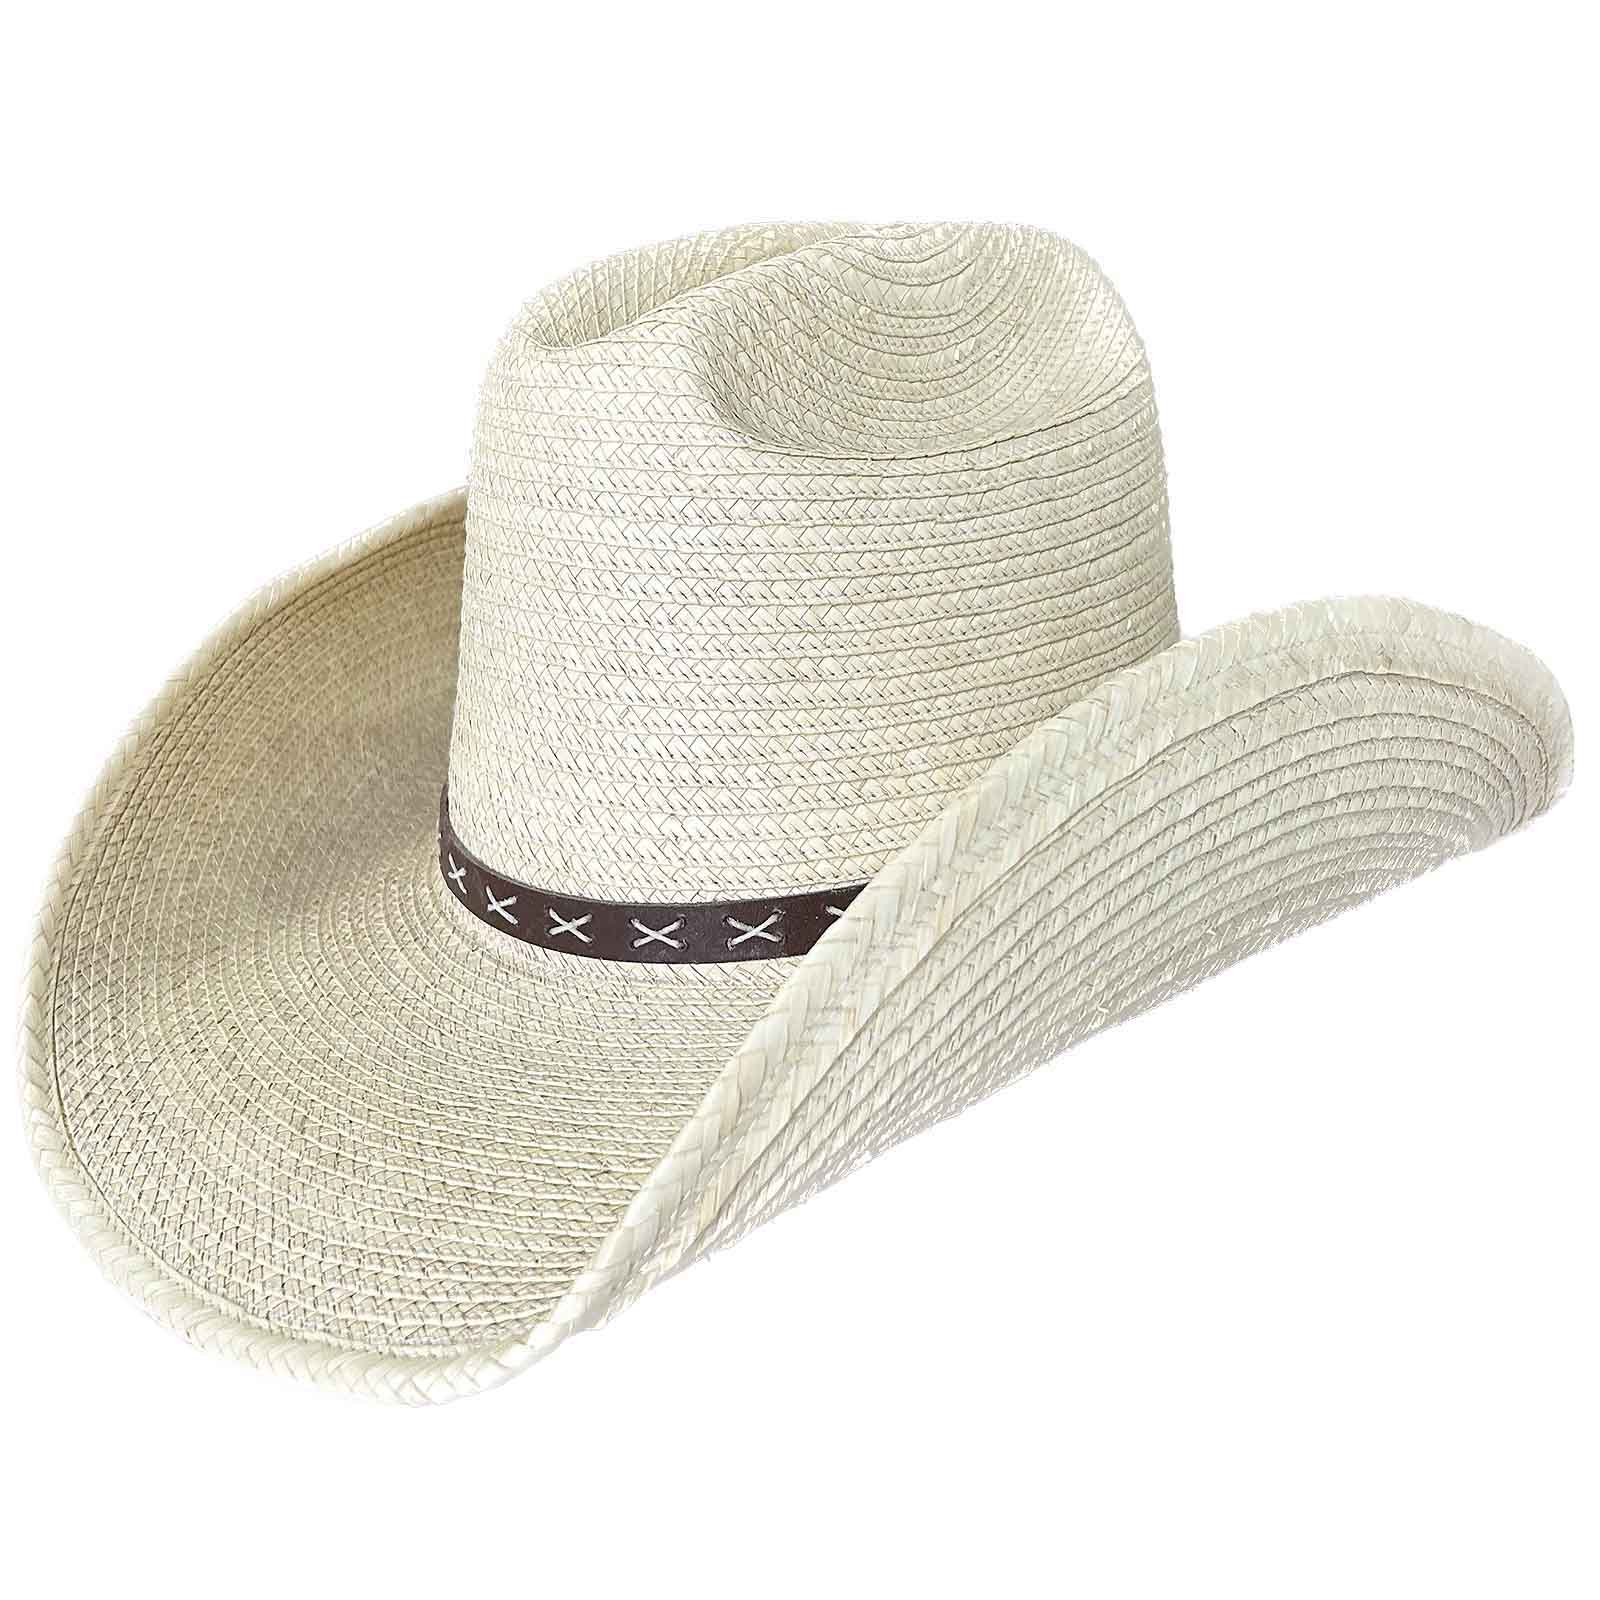 Straw Palm X Band Rolled Western Cowboy Hat